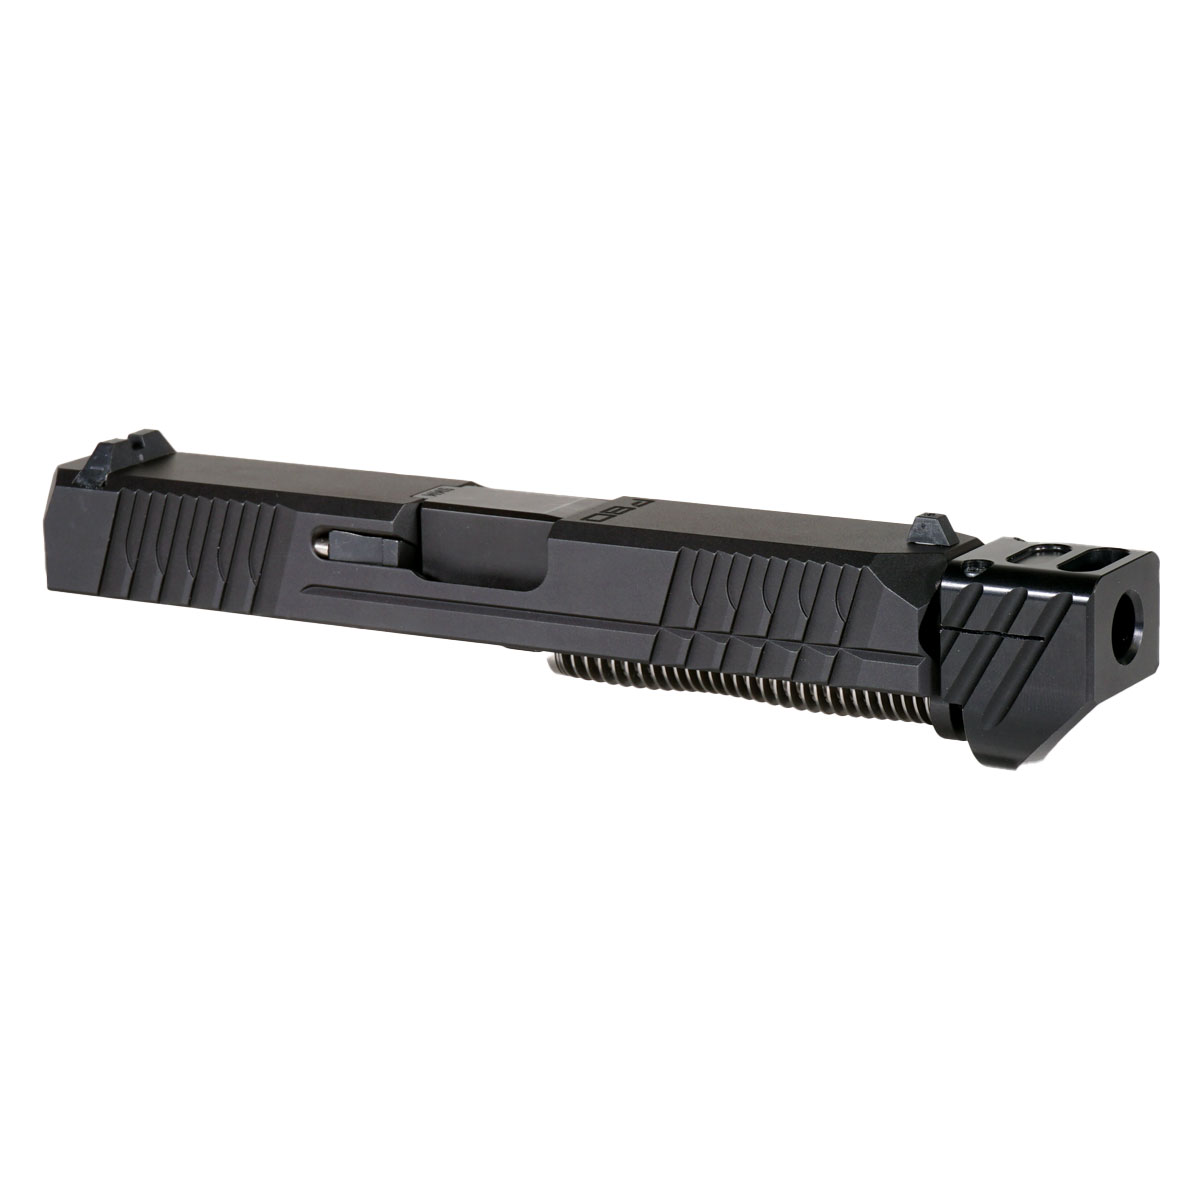 DDS 'Paracausal V4 w/ Black Compensator' 9mm Complete Slide Kit - Glock 19 Gen 1-3 Compatible